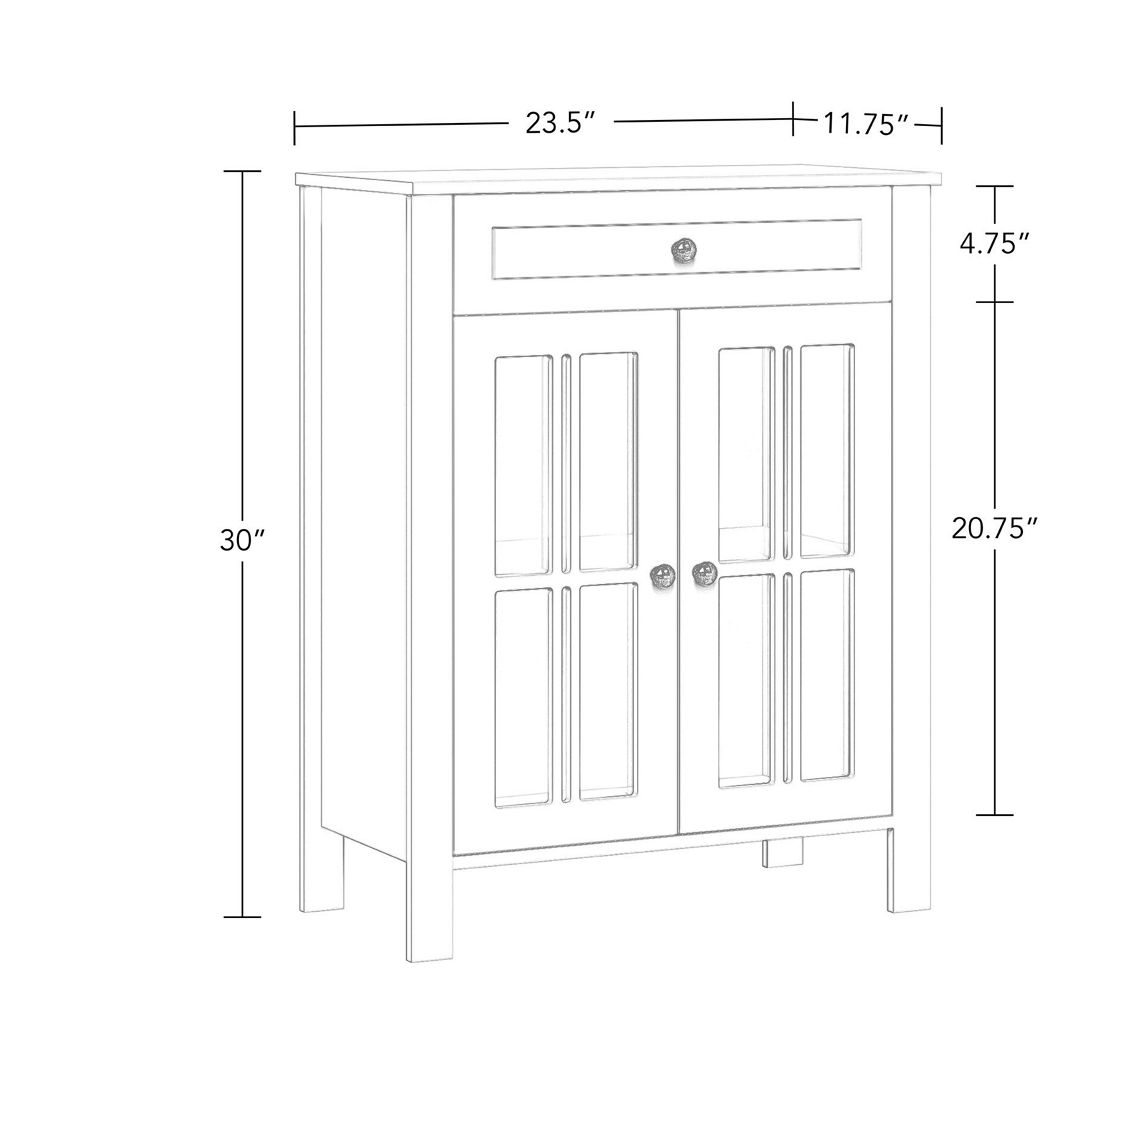 RiverRidge Danbury Two-Door Floor Cabinet - Image 4 of 5